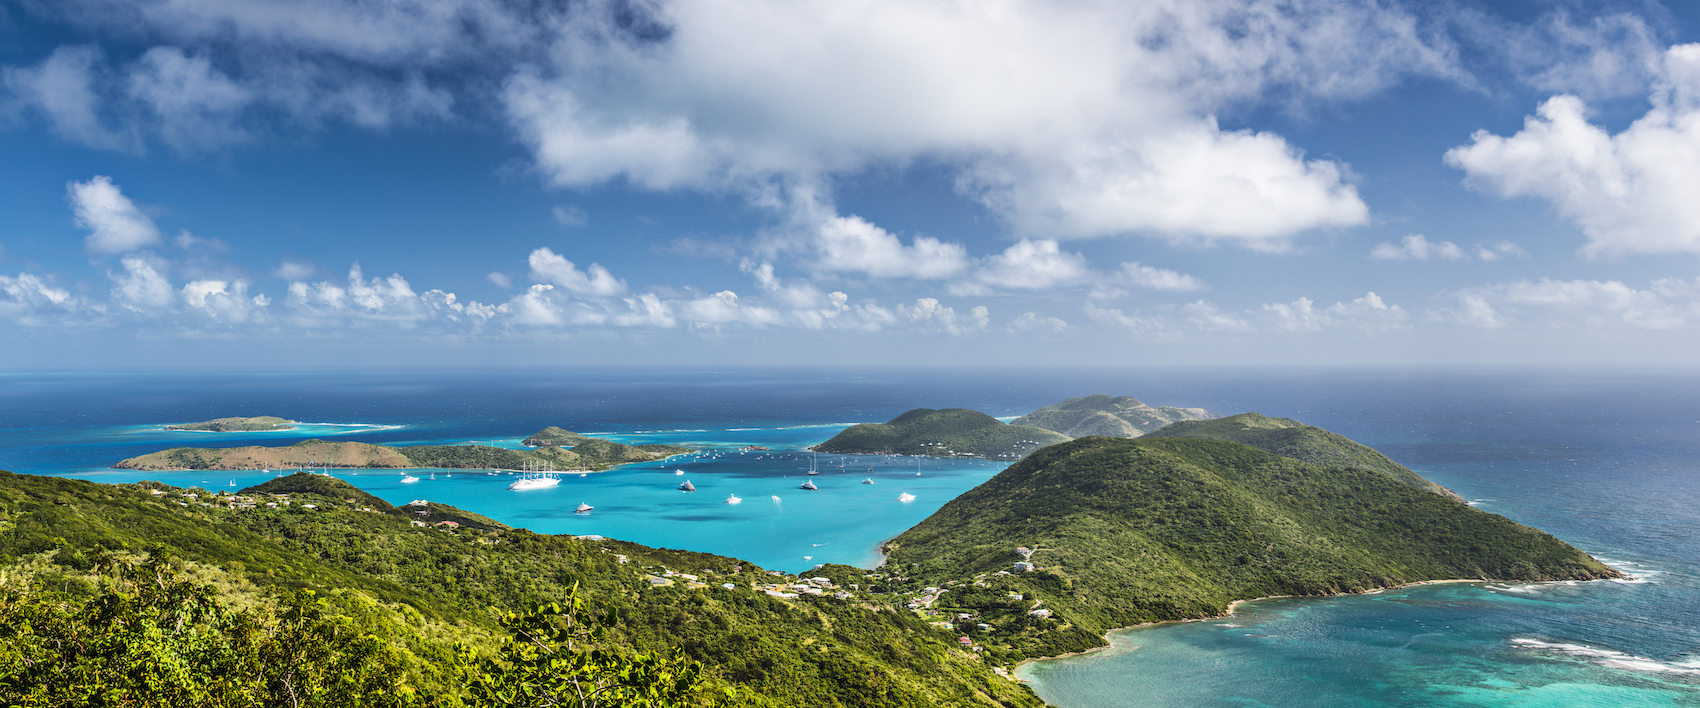 Virgin Gorda, British Virgin Islands, Caribbean